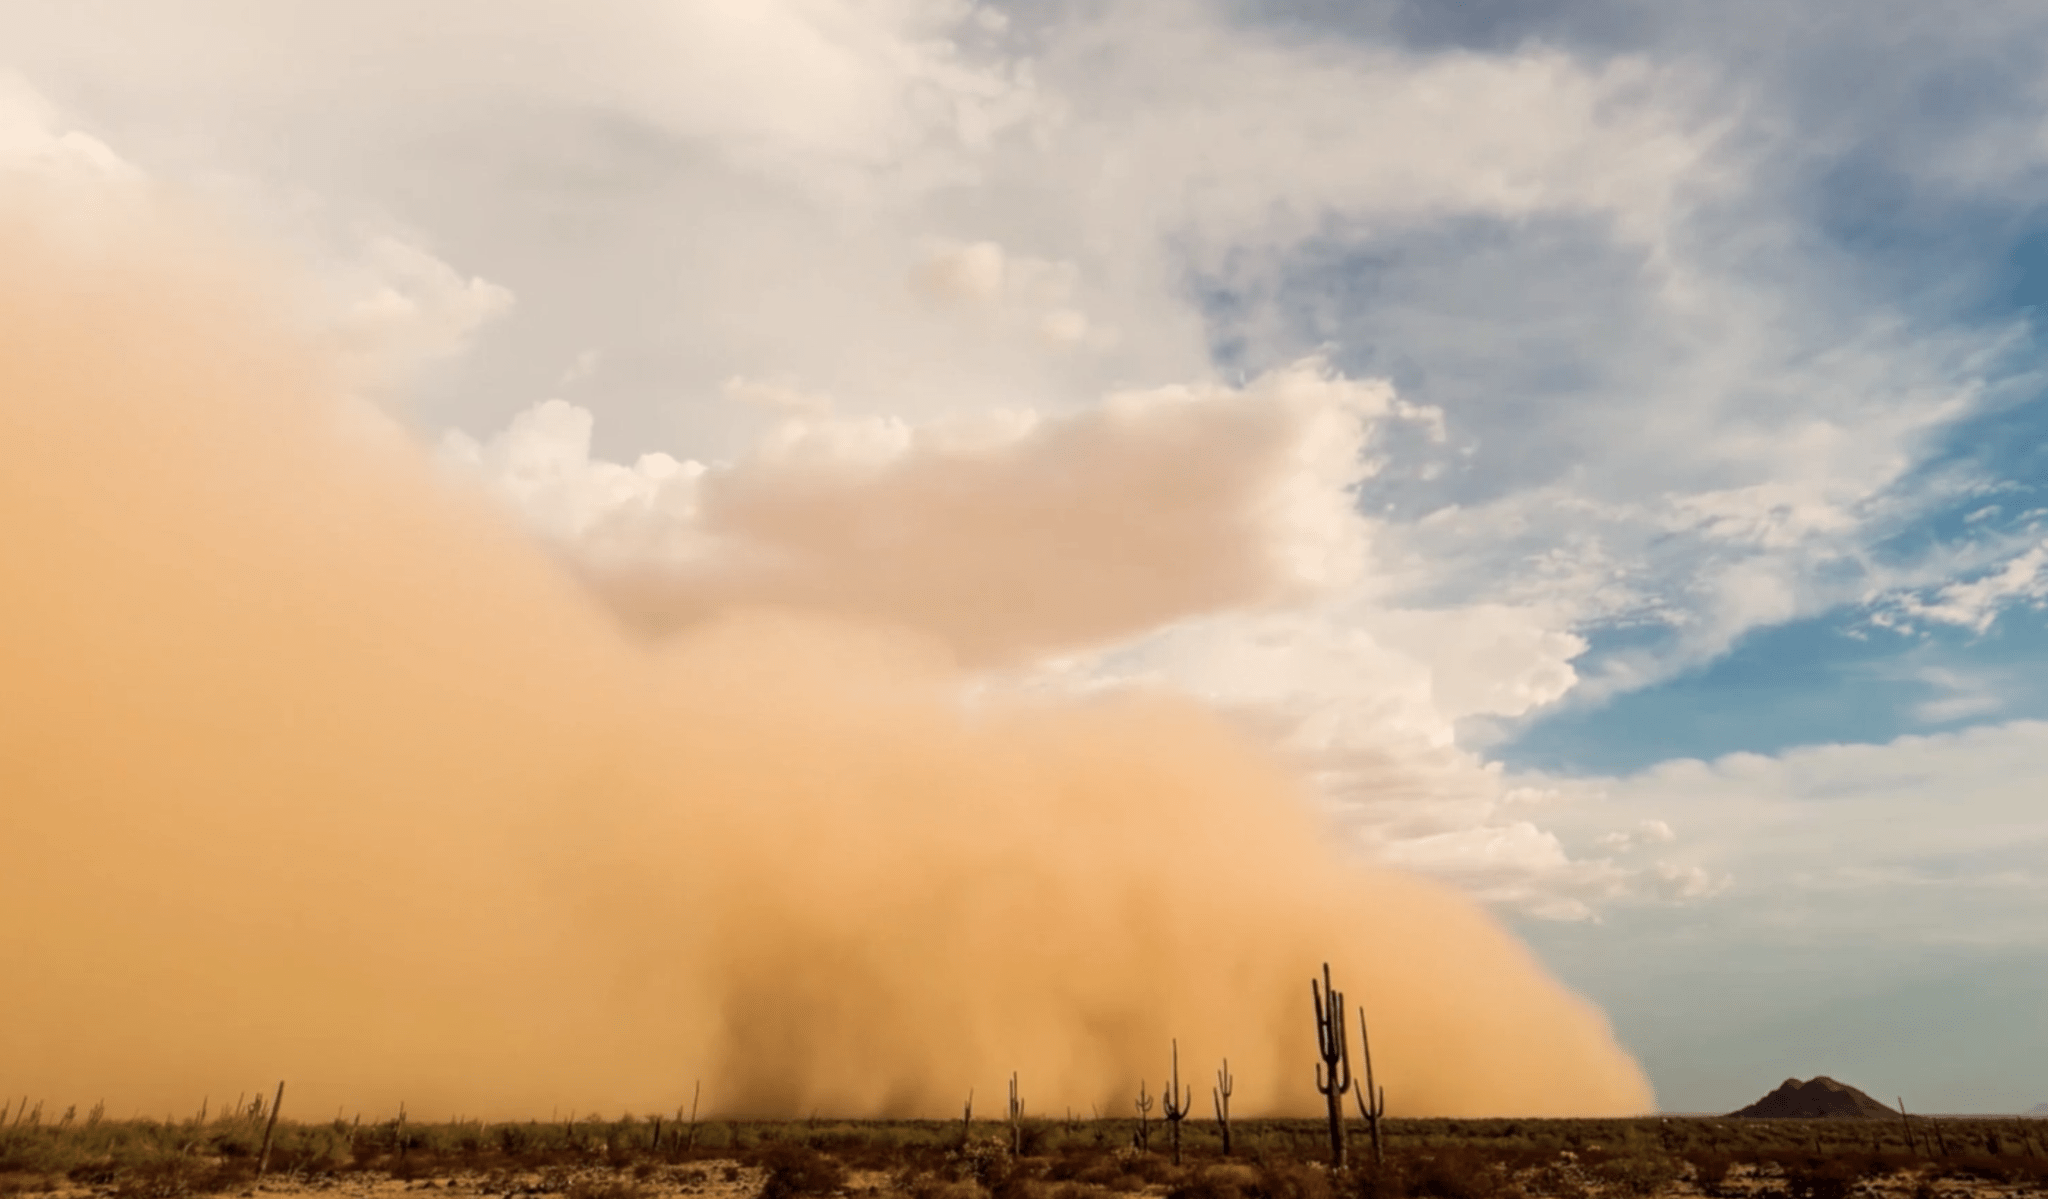 Desert Dust Storm